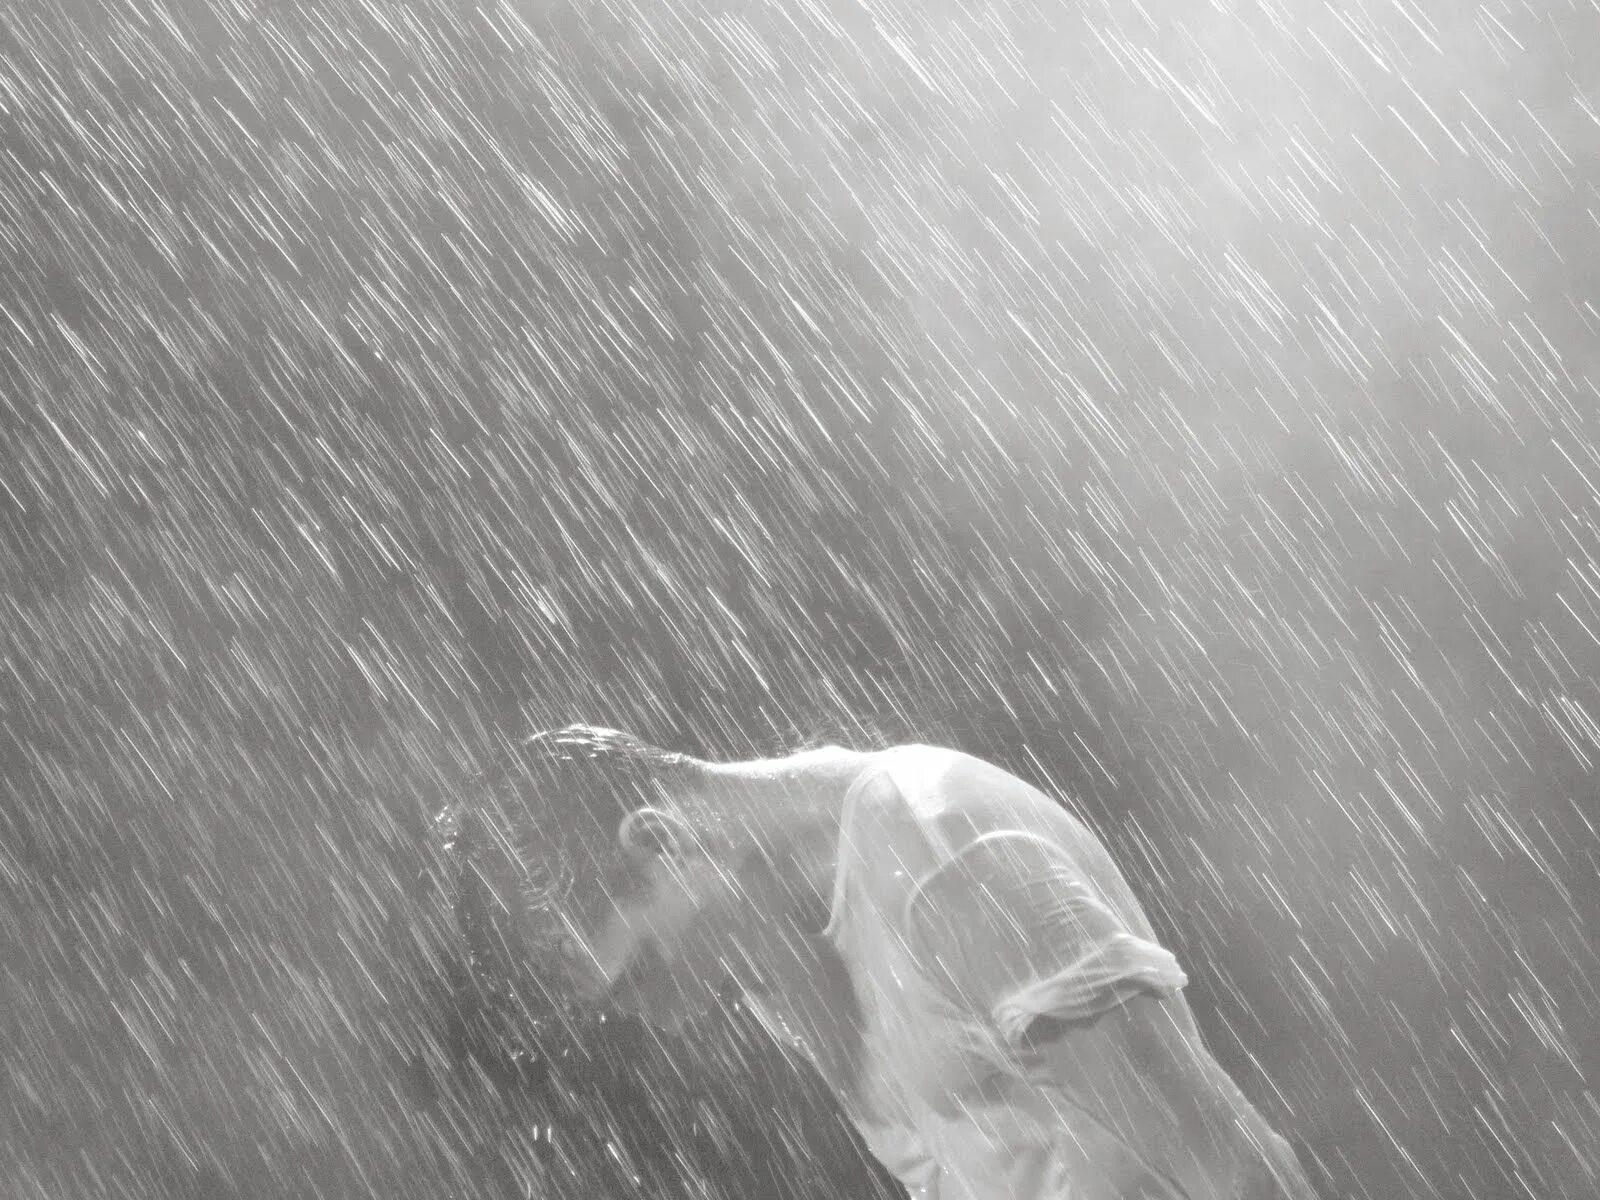 Дождь. Человек под дождем. Мужчина под дождем. Крик под дождем. В голове туман на душе